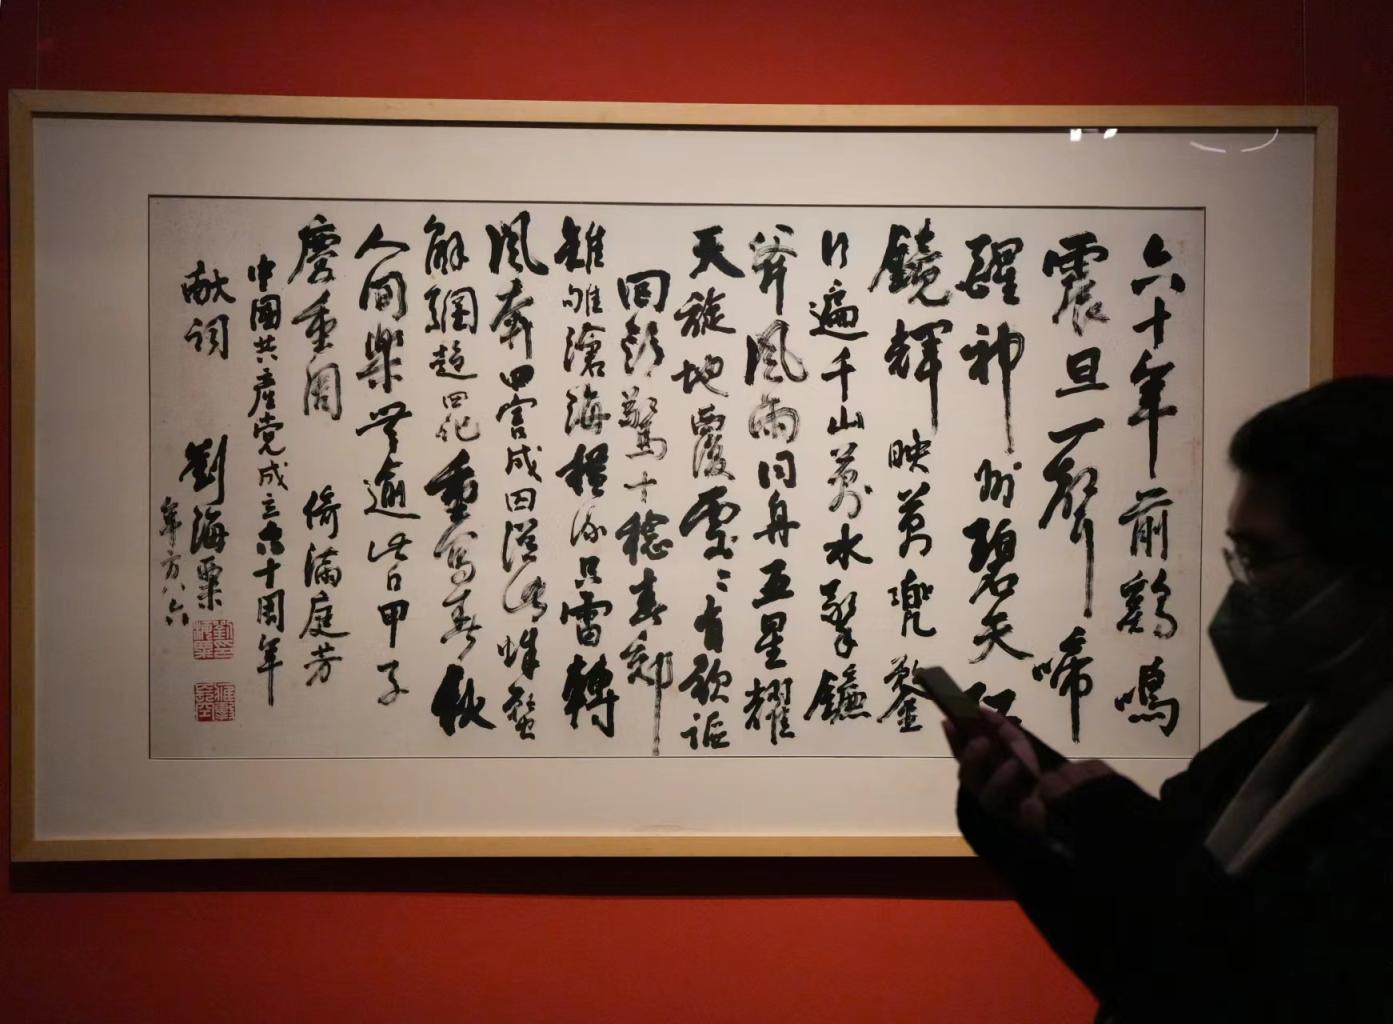 刘海粟首次书法大展 “墨海龙蛇”亮相中国美术馆